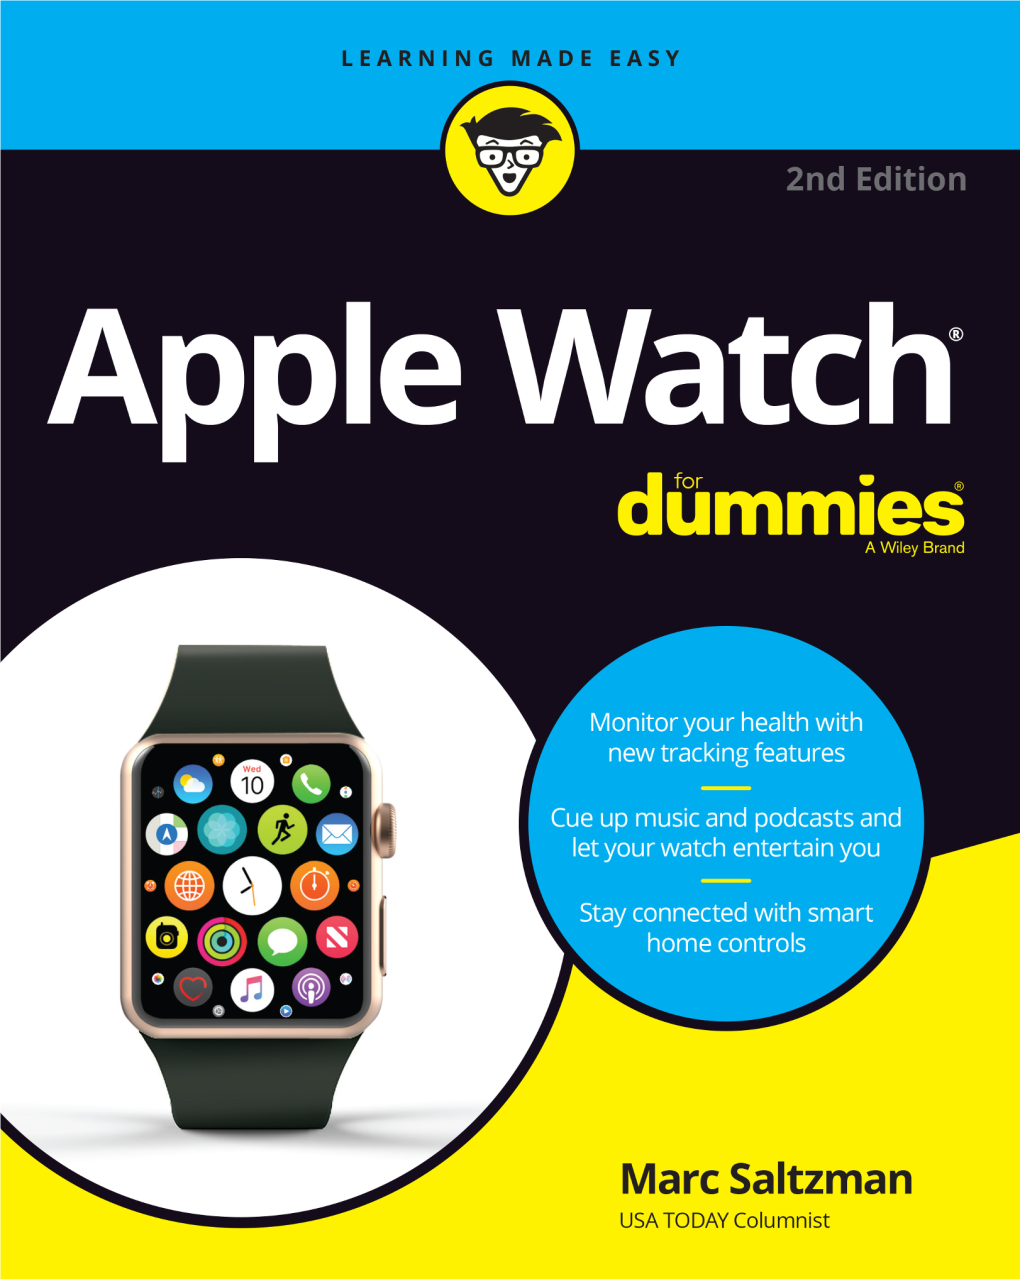 Apple Watch®